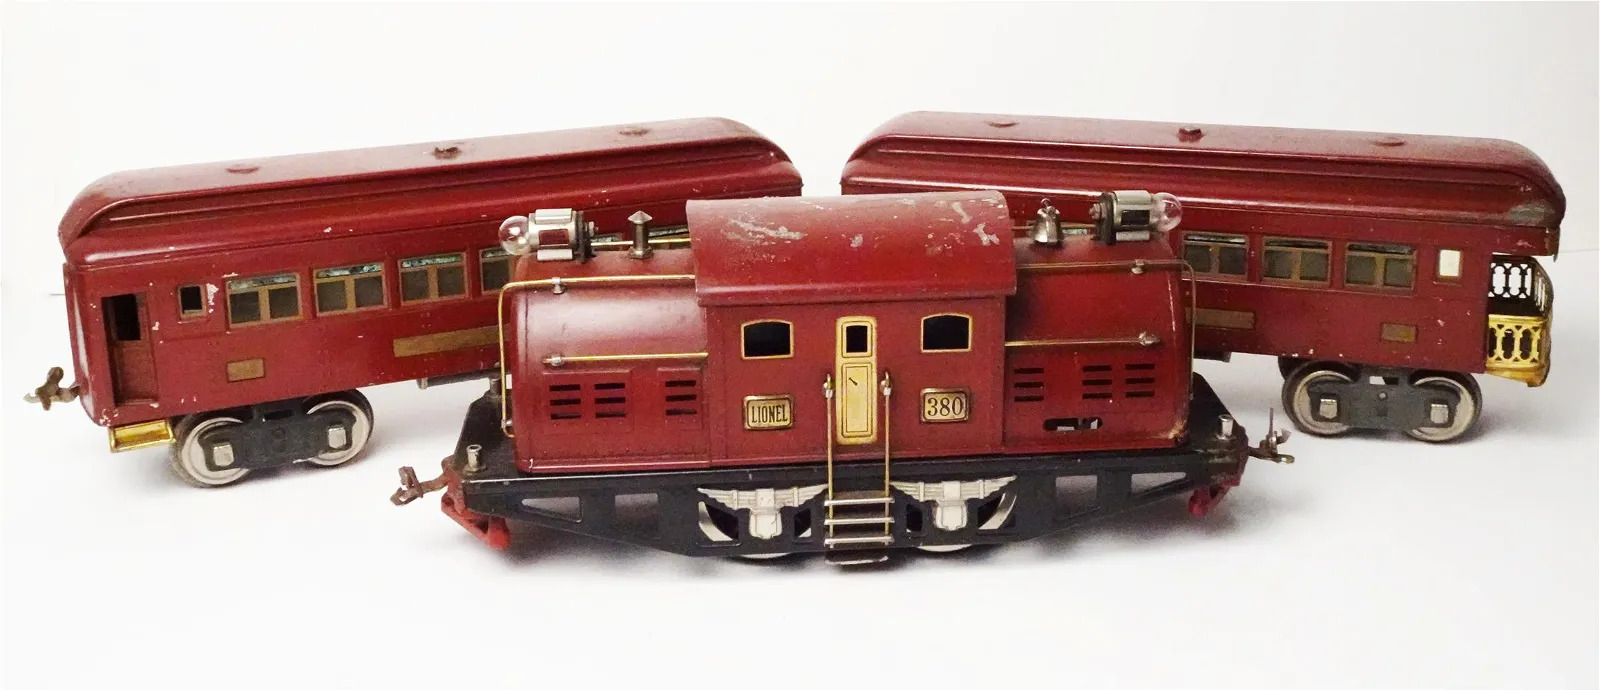 17 Toys Trains Auction